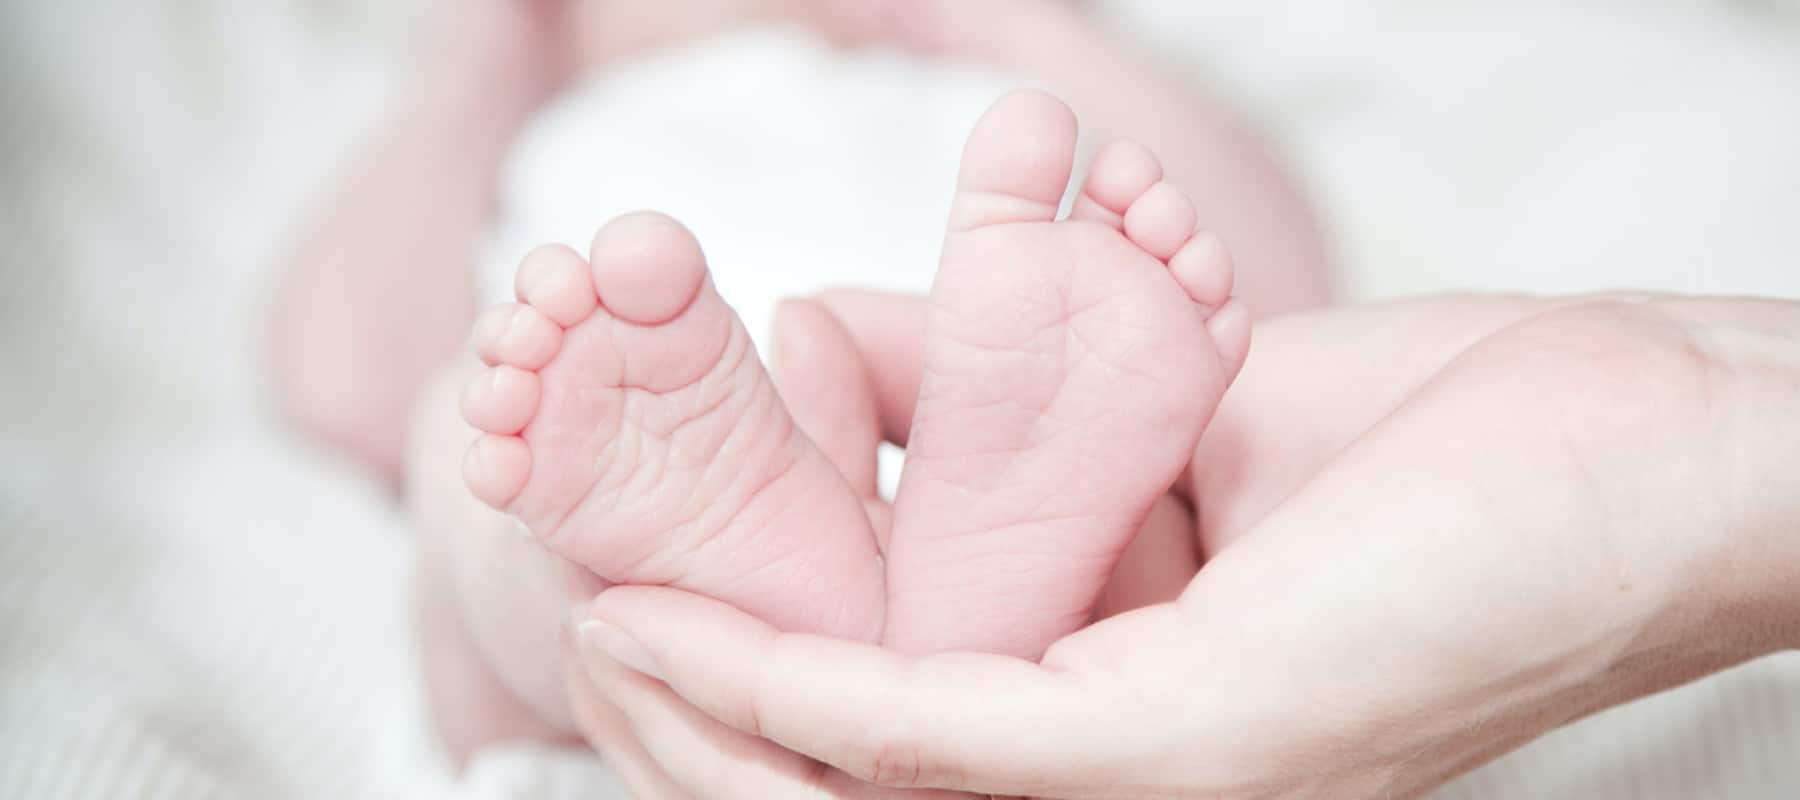 Mein Baby ist gerade geboren, welche erste Pflege braucht es?.